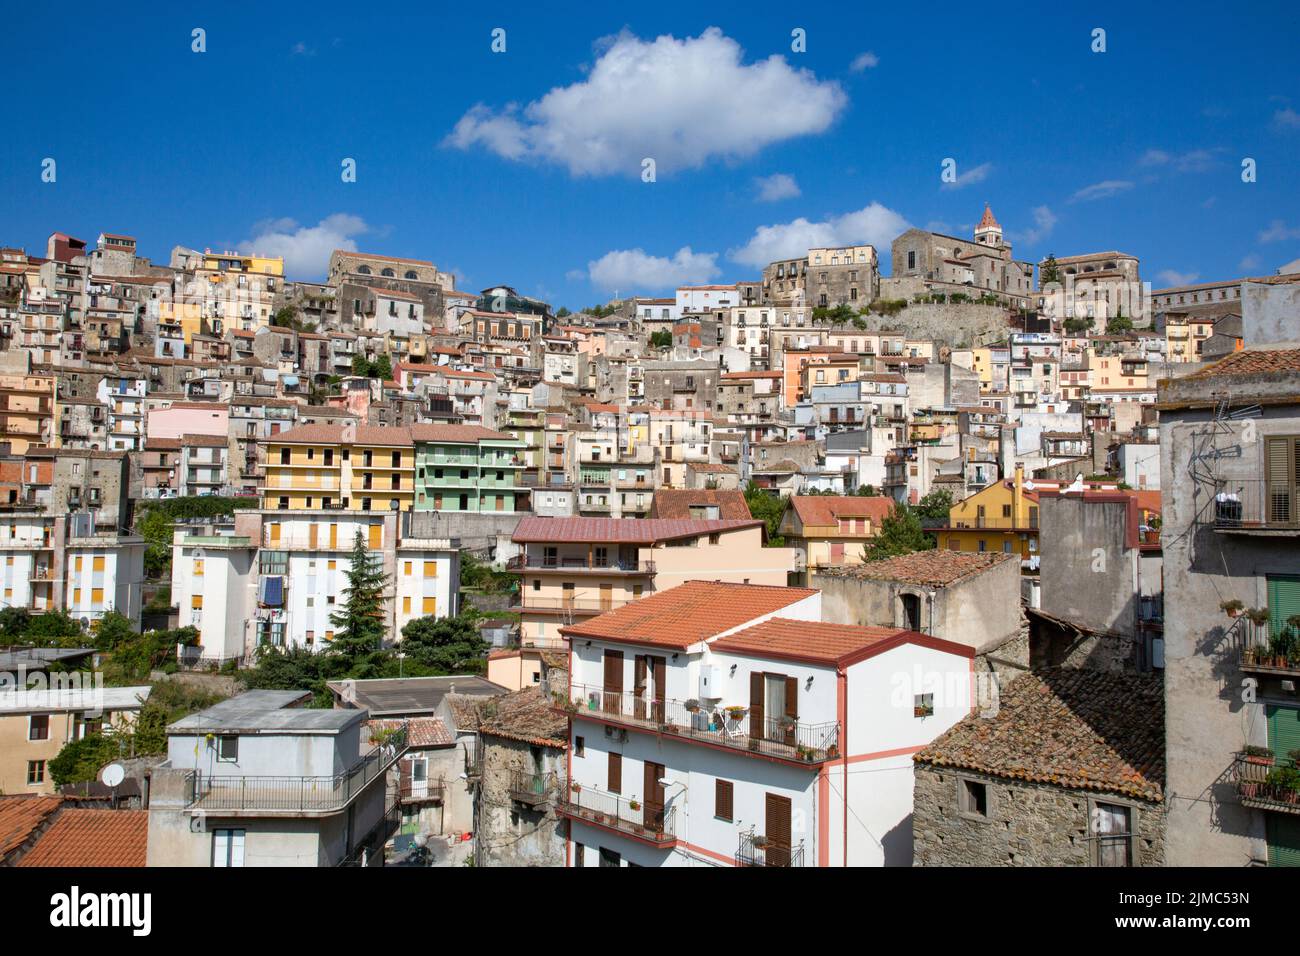 Bunt bemalte Häuser von typischer Stadt in Bergen von Sizilien Stock Photo